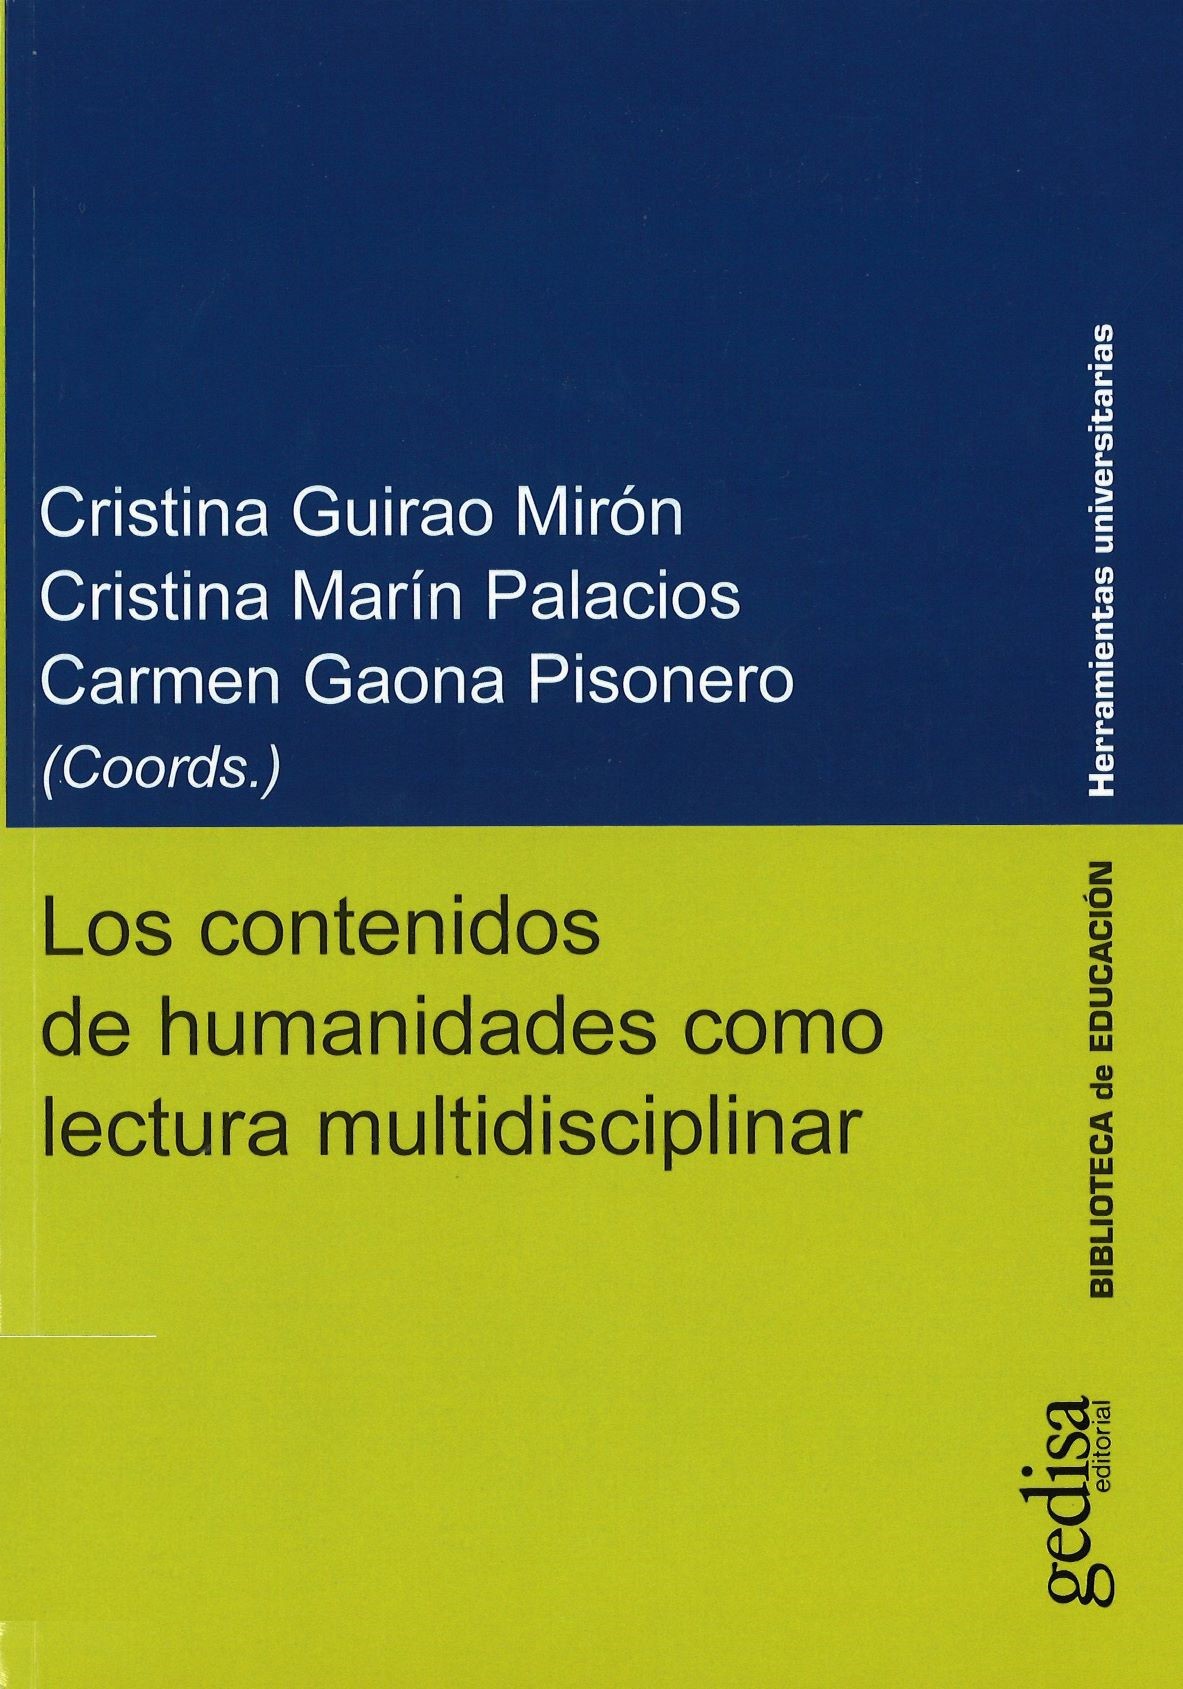 Imagen de portada del libro Los contenidos de humanidades como lectura multidisciplinar